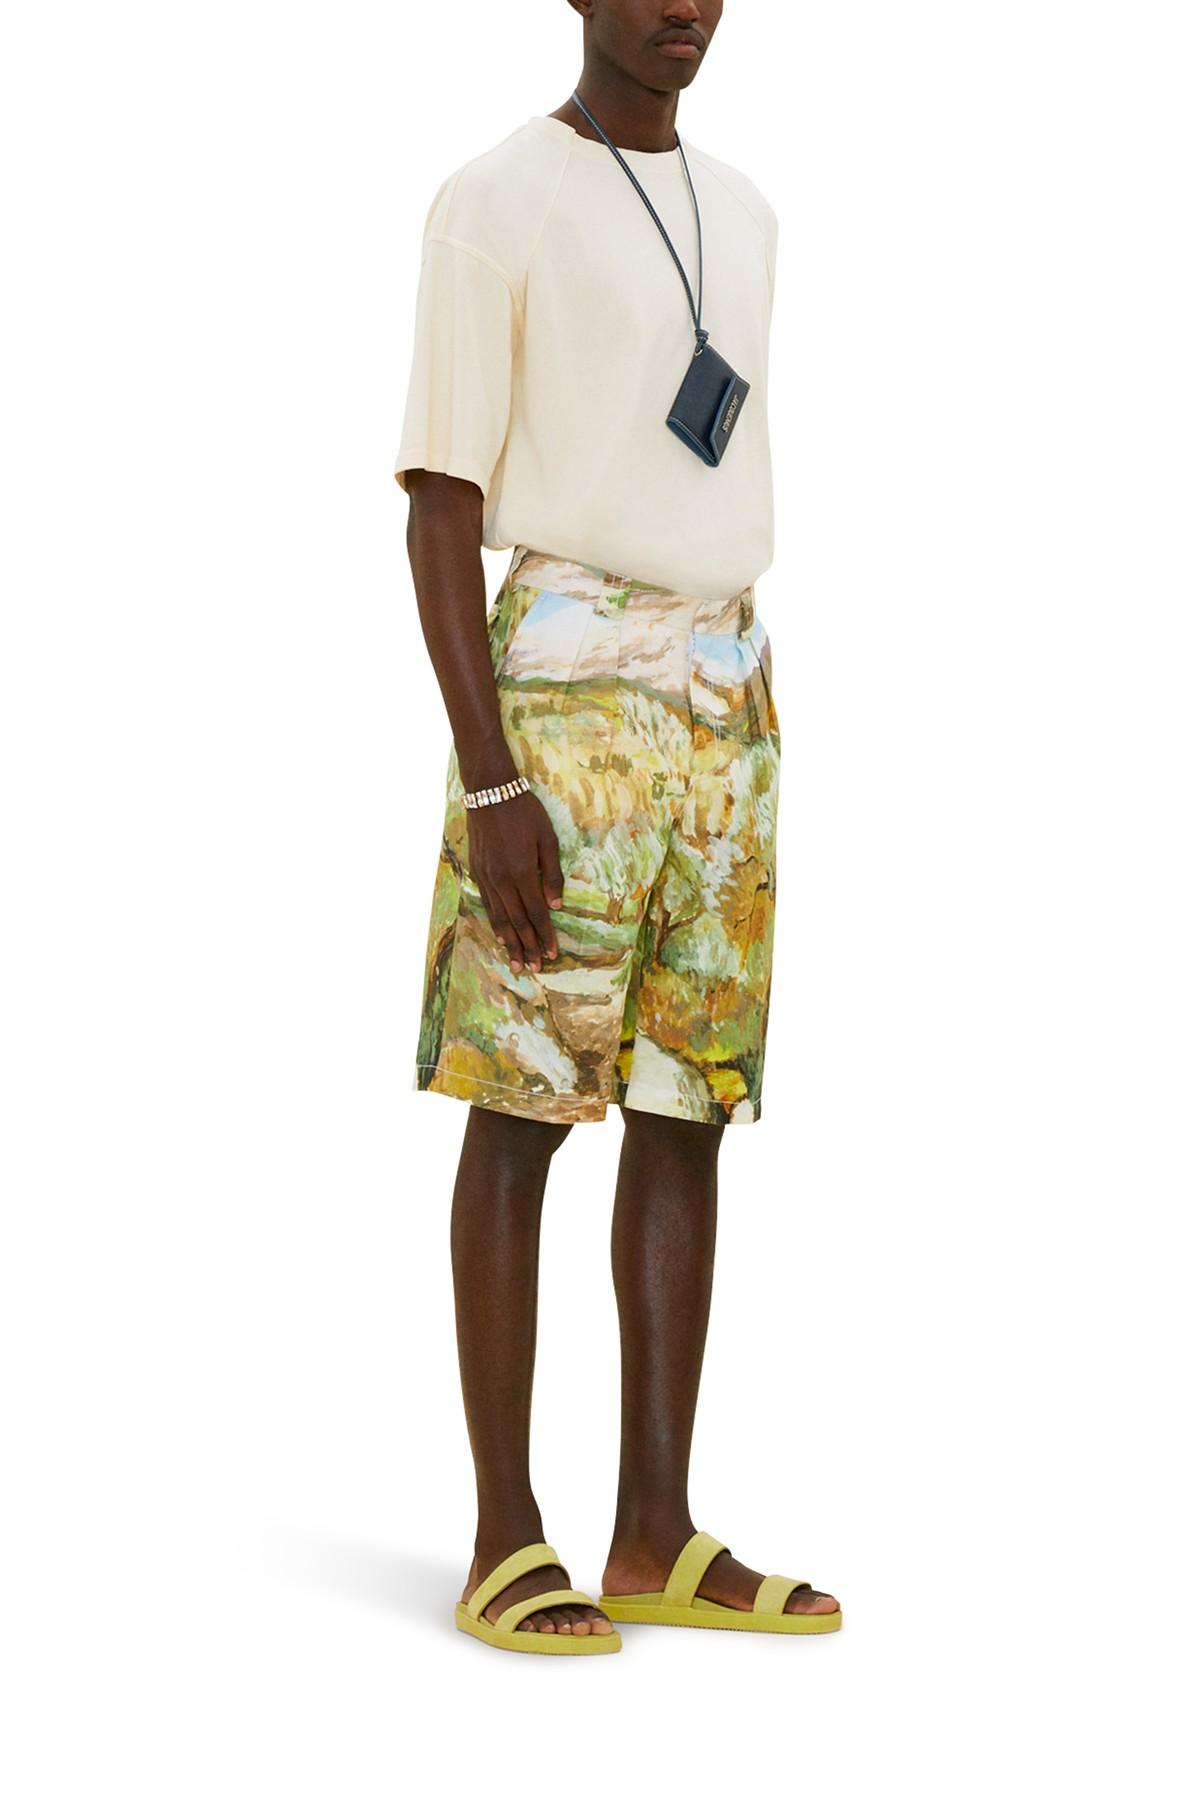 Louis Vuitton multi Cotton Graphic Floral Jacquard Shorts